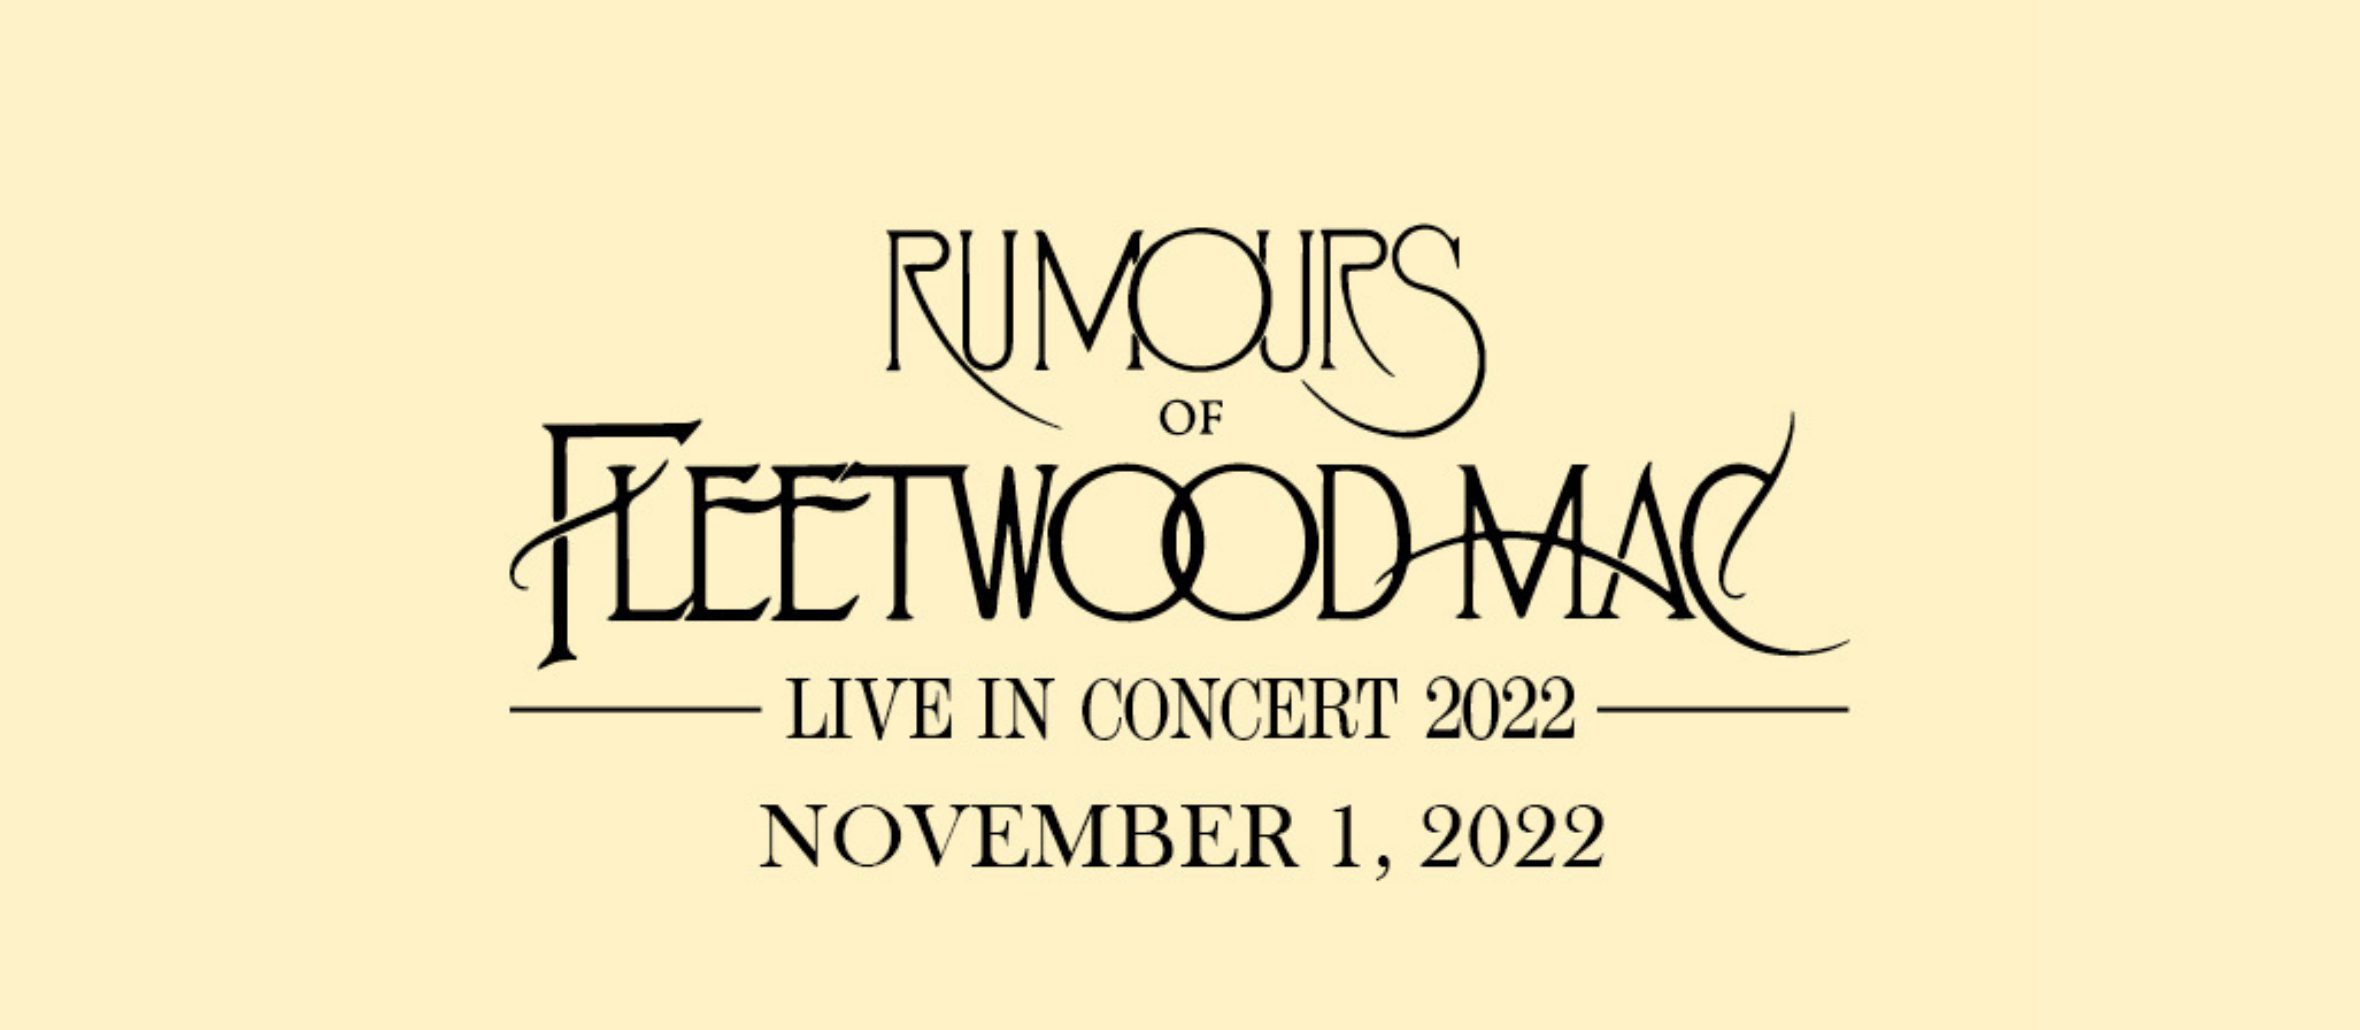 Rumours of Fleetwood Mac Live In Concert 2022